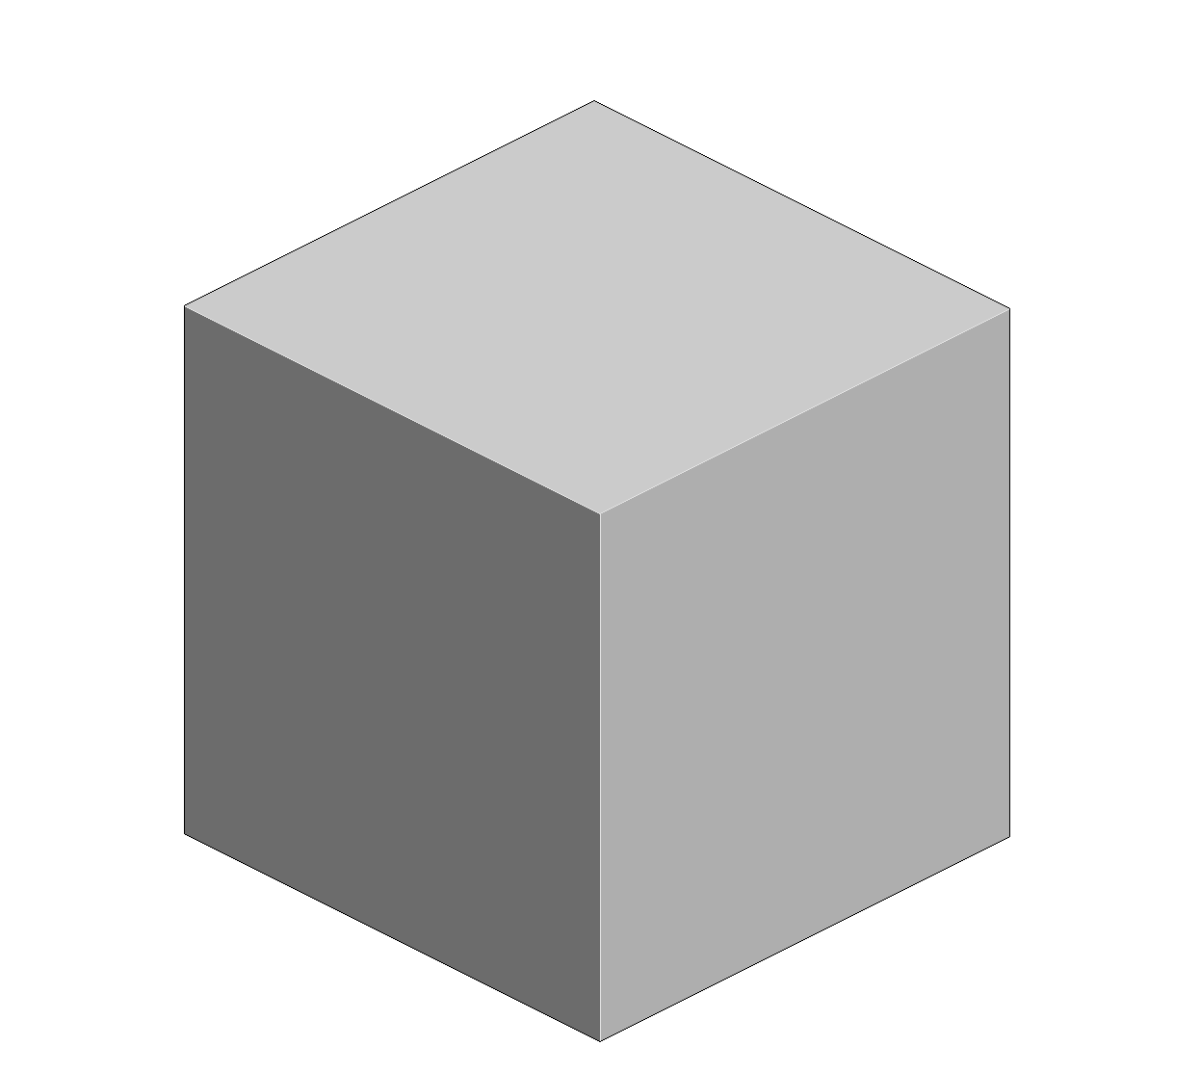 Куб. Объемная фигура куб. Трёхмерный куб. Объемный квадрат. Куб другое название